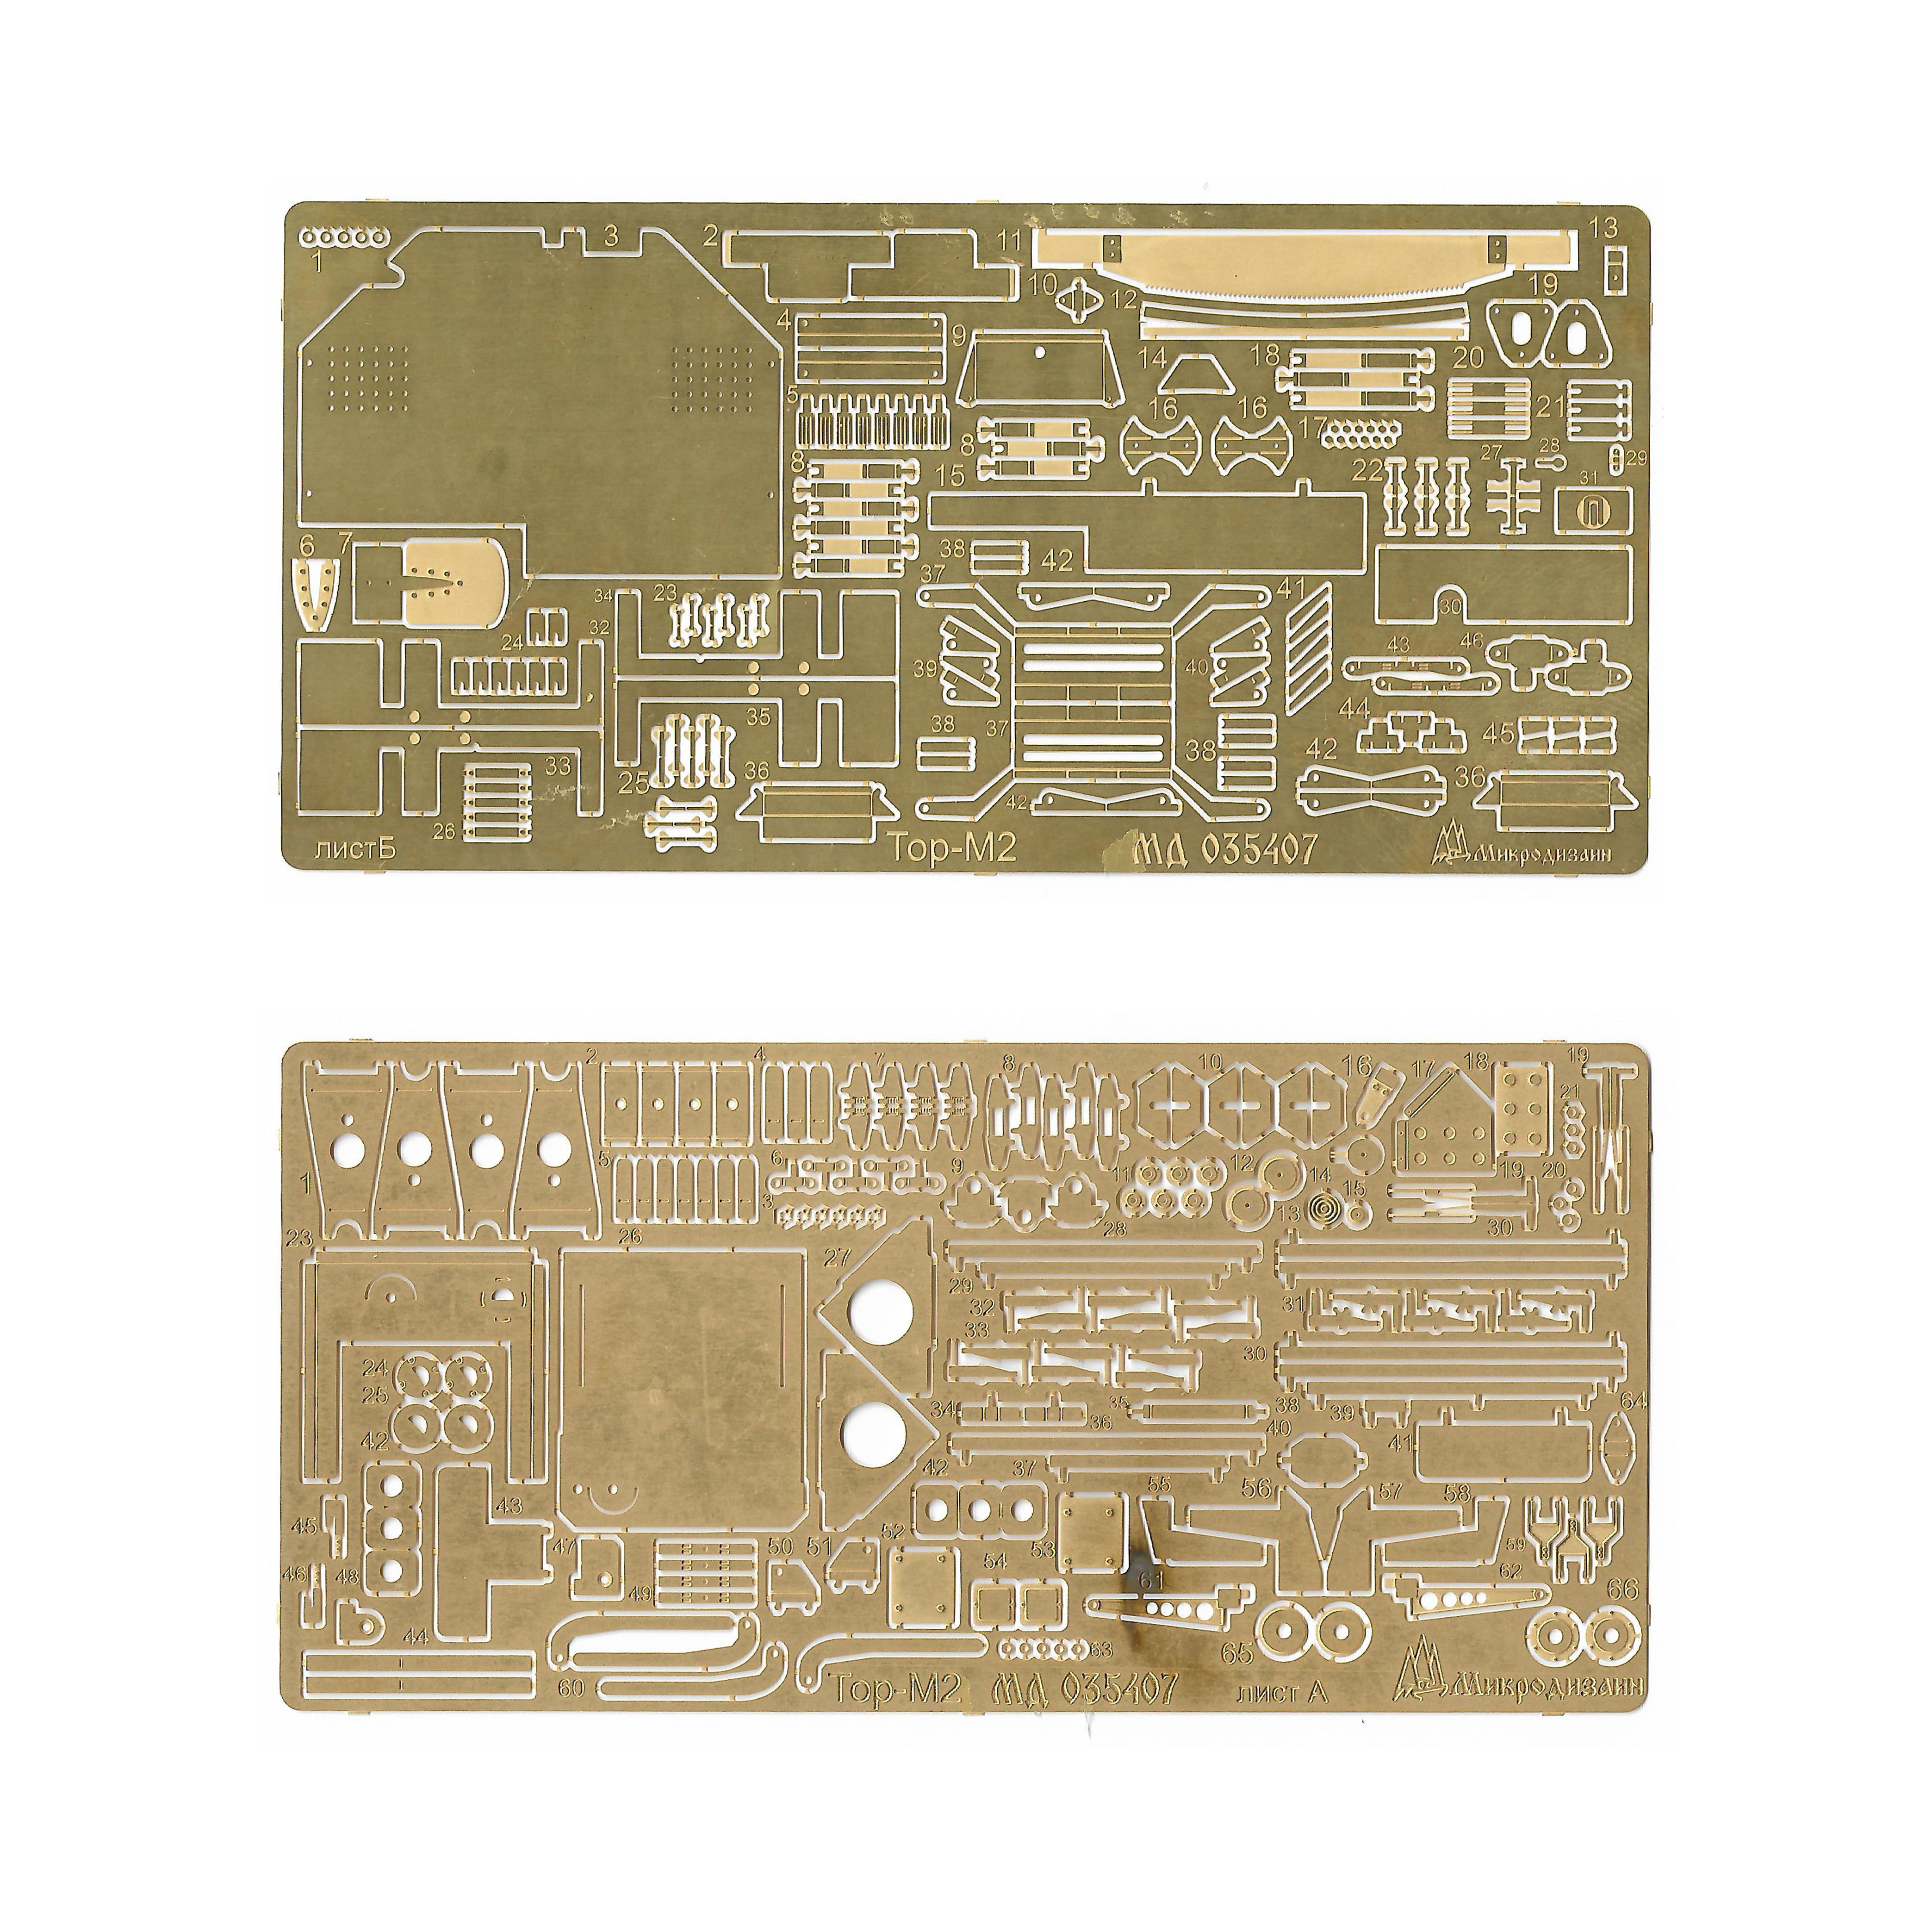 035407 Microdesign 1/35 Basic Kit for TOR-М2